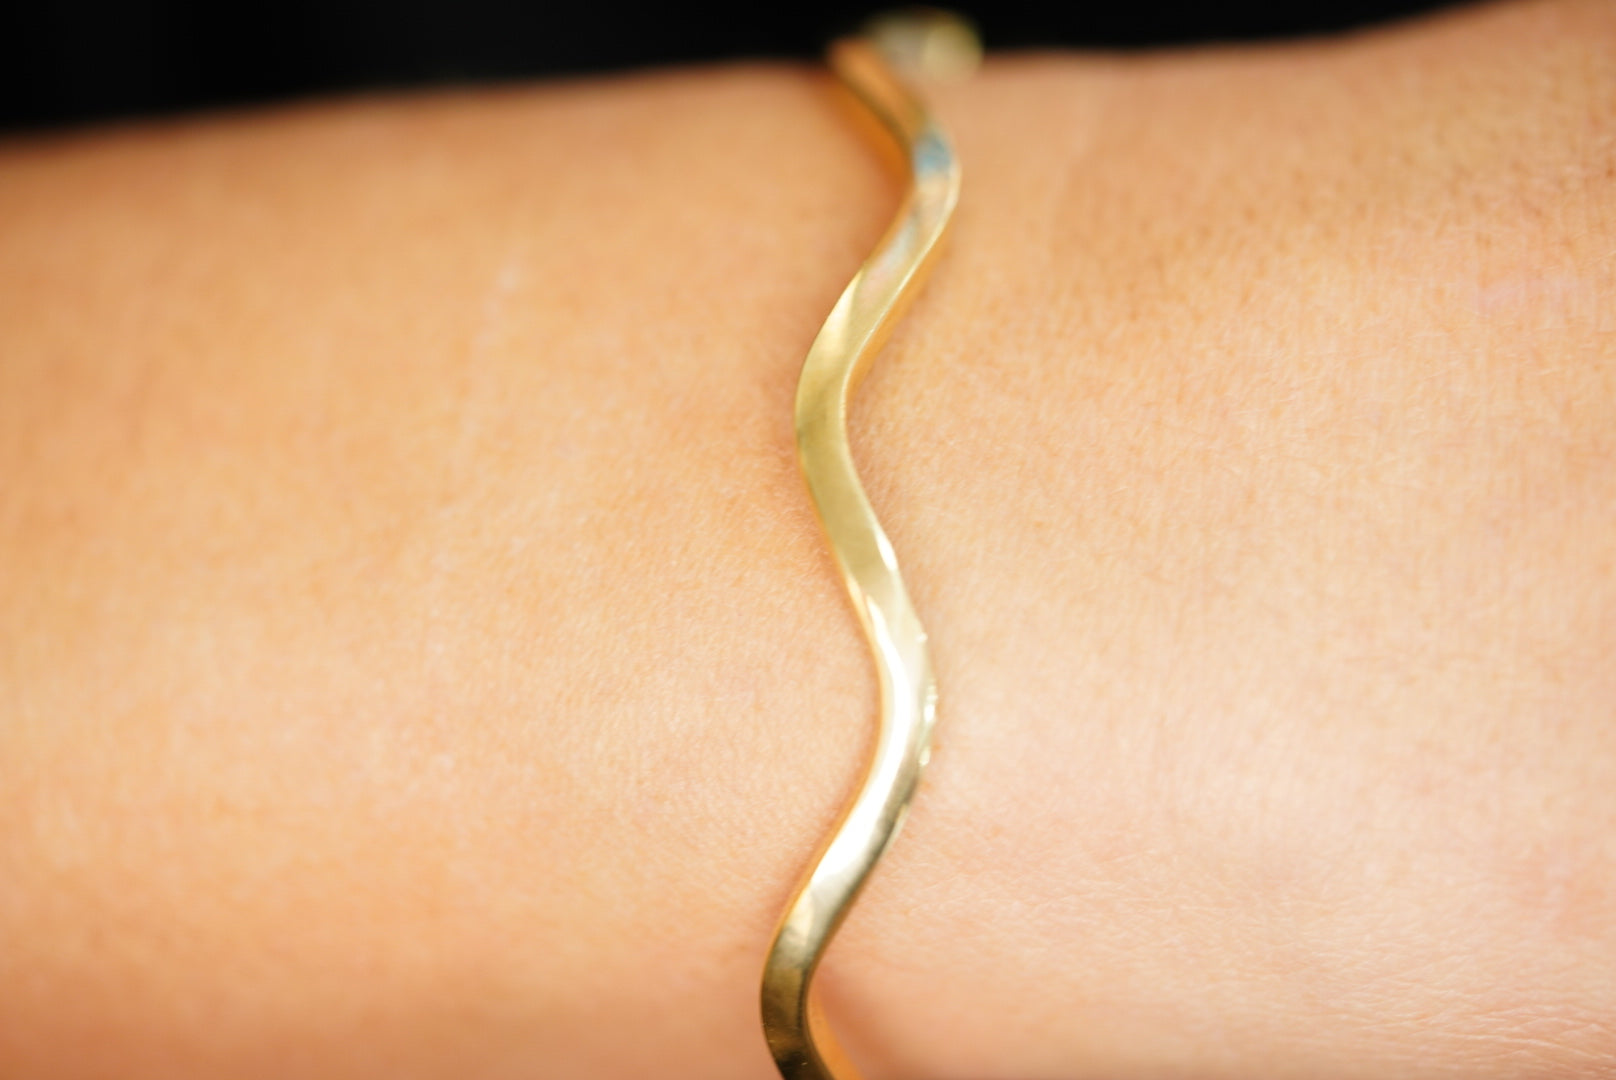 14k Golden Waves Bangle Bracelet